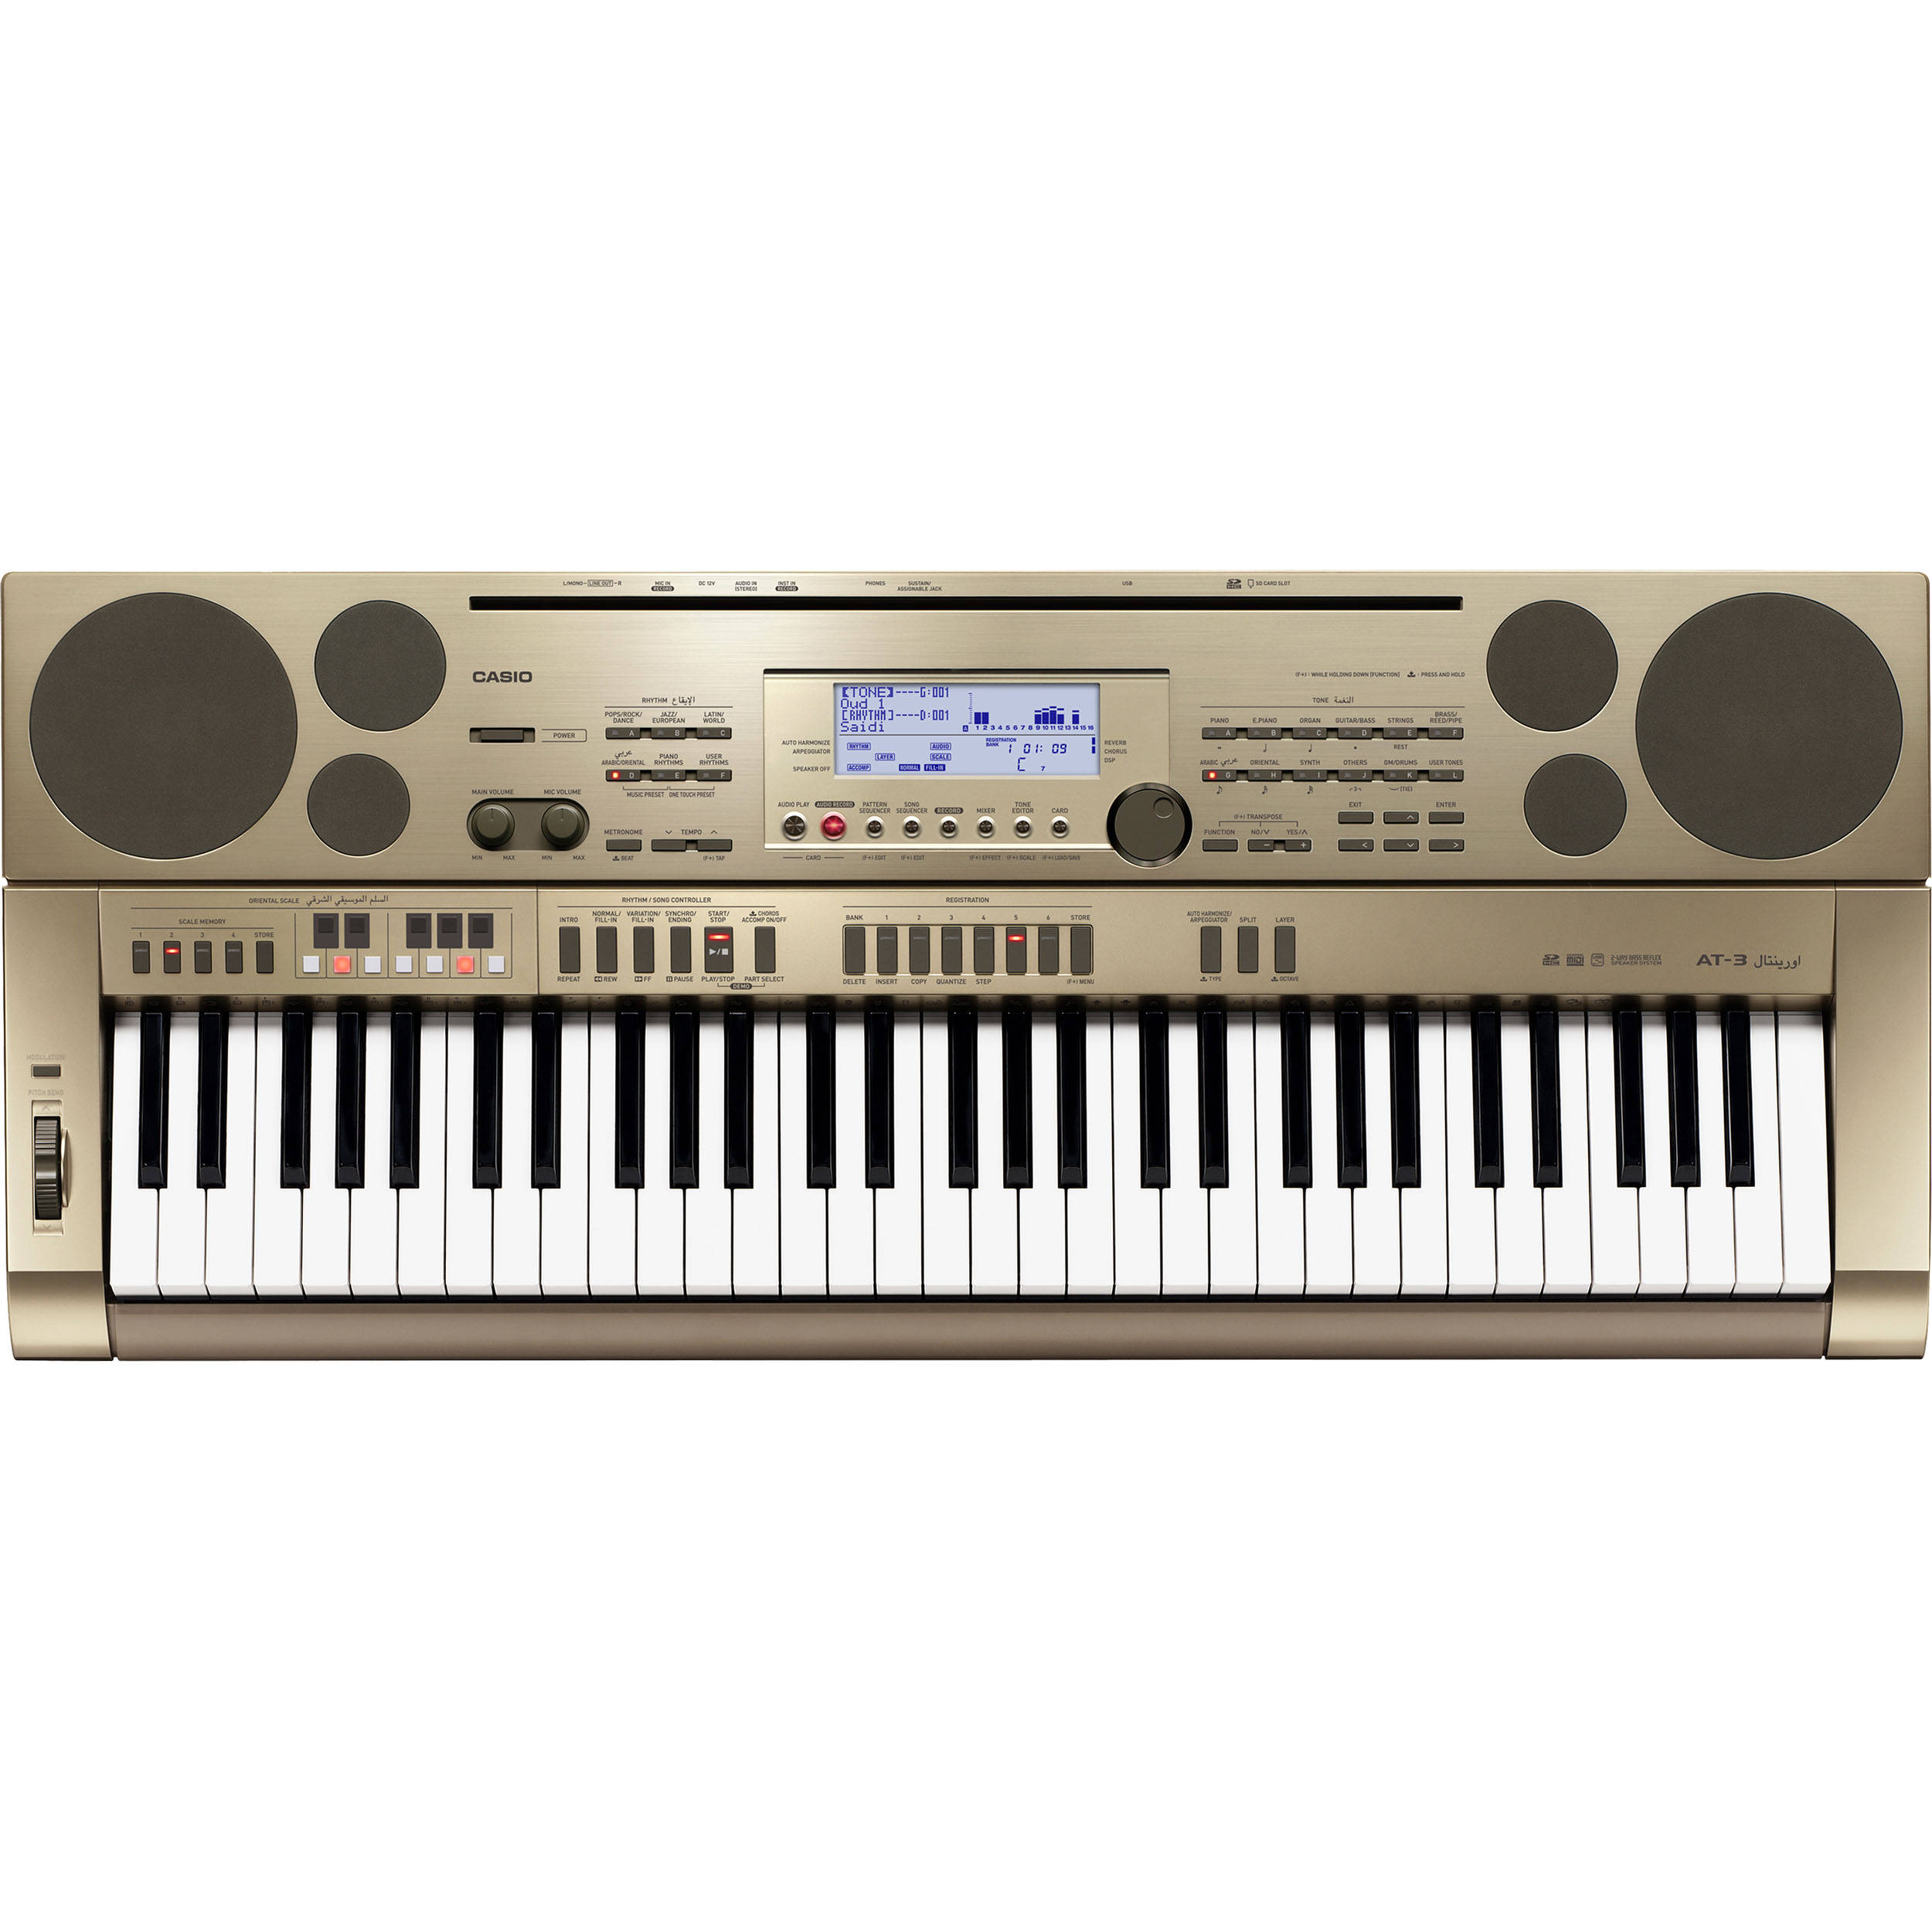 Casio keyboard songs downloads